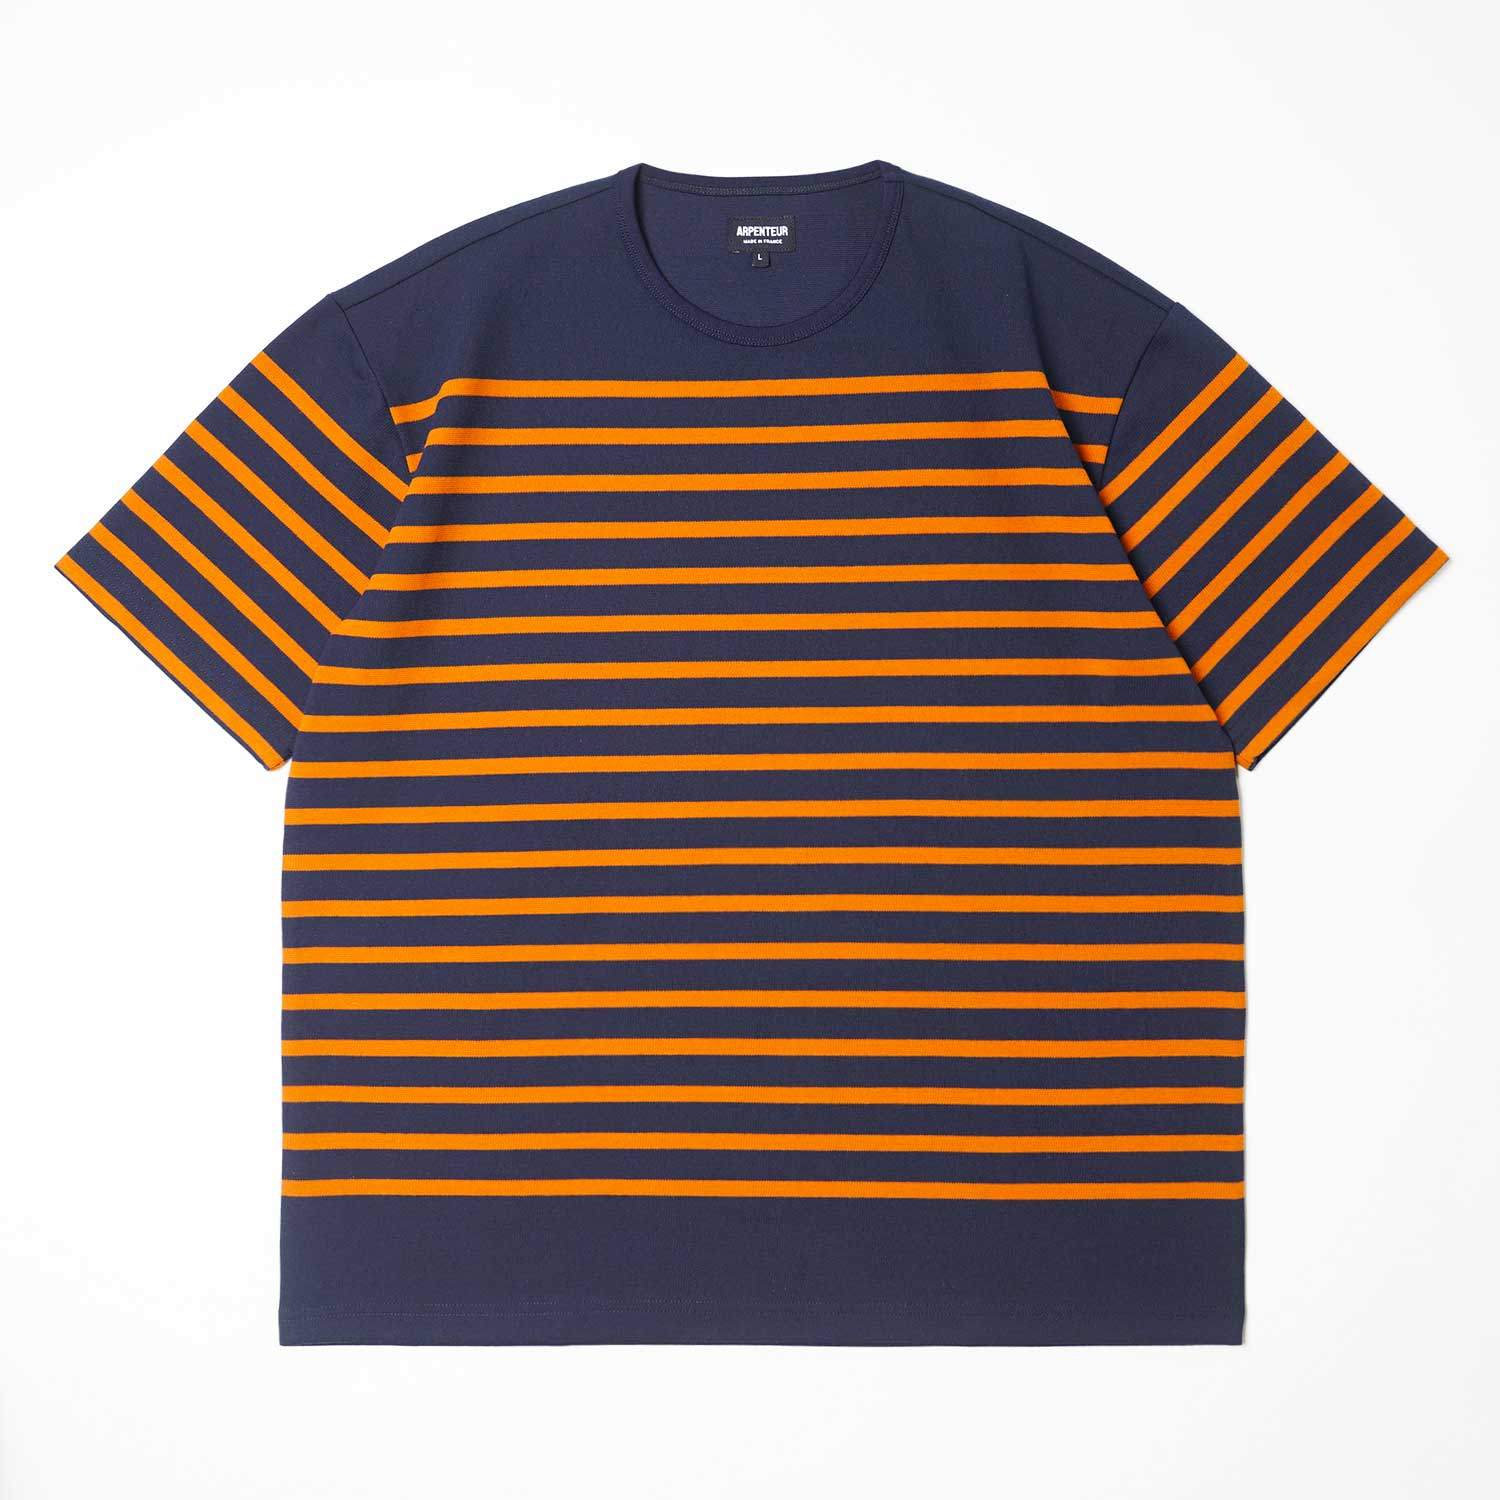 RACHEL t-shirt in Navy Orange color by Arpenteur